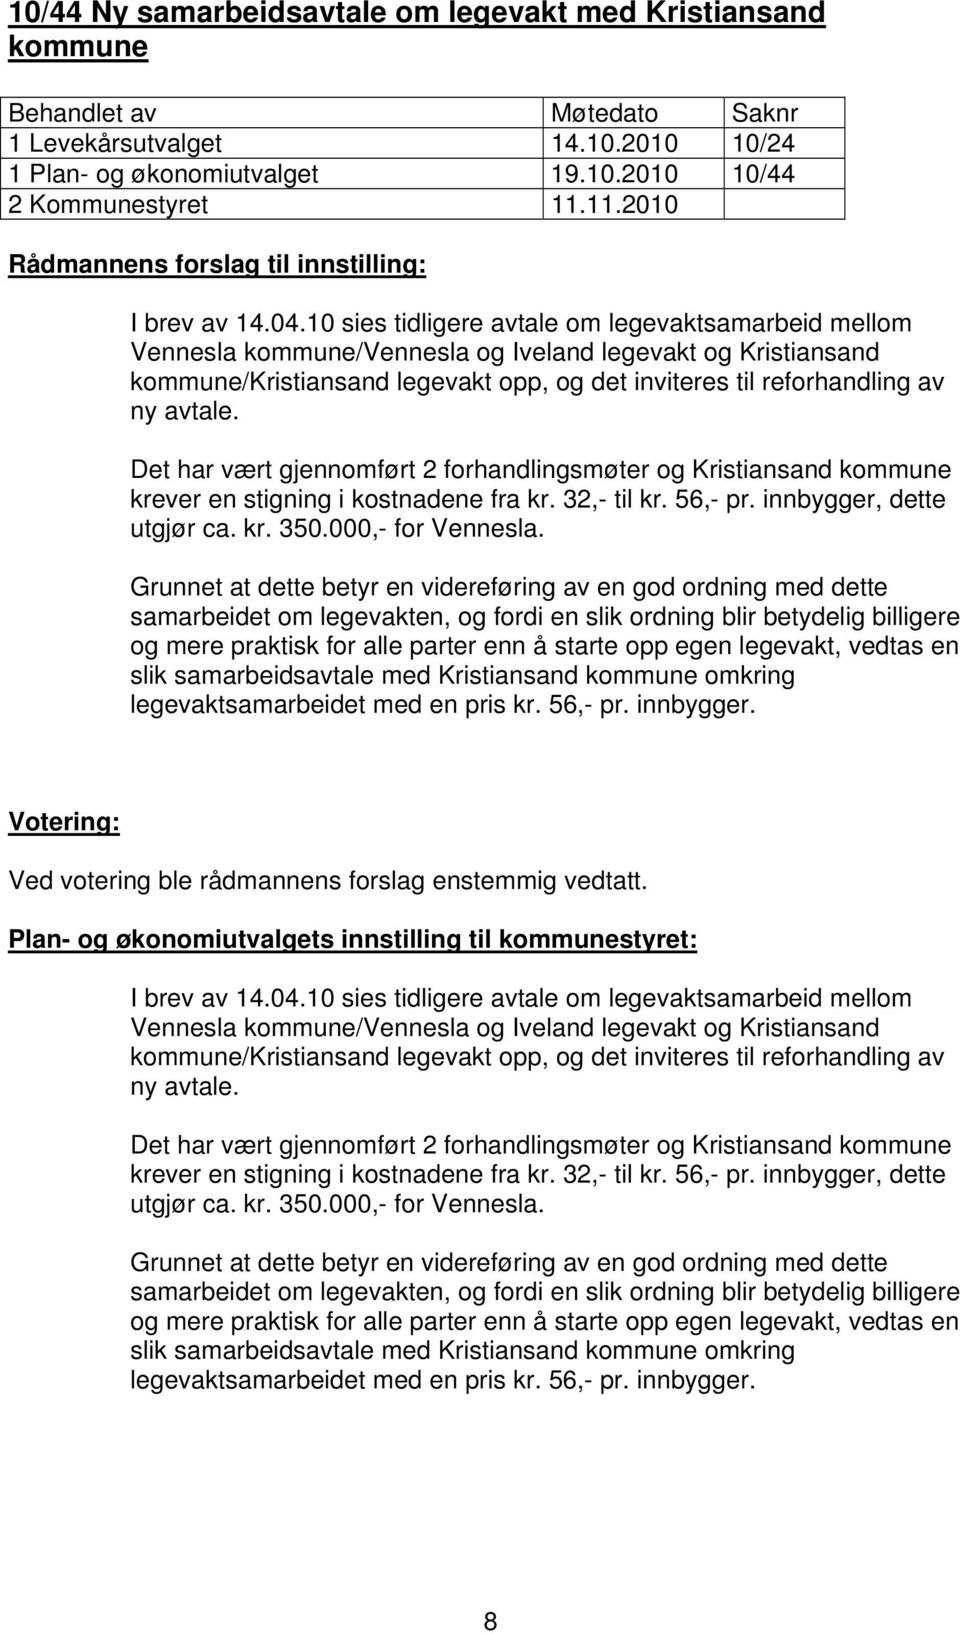 Det har vært gjennomført 2 forhandlingsmøter og Kristiansand kommune krever en stigning i kostnadene fra kr. 32,- til kr. 56,- pr. innbygger, dette utgjør ca. kr. 350.000,- for Vennesla.